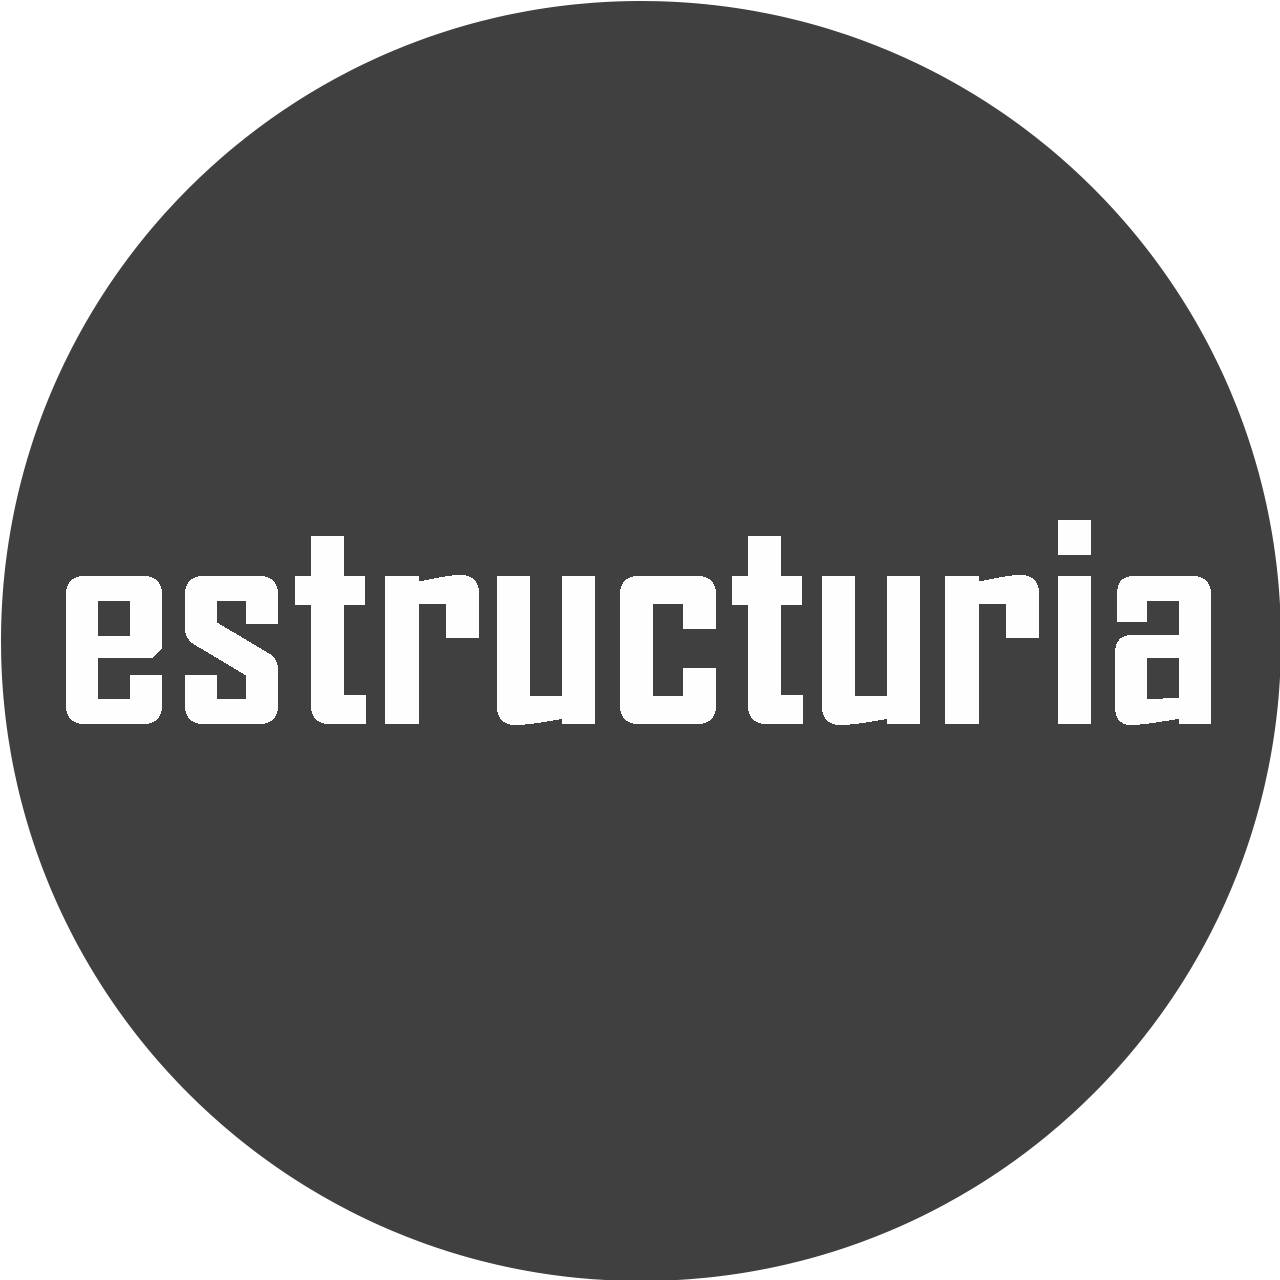 Estructuria